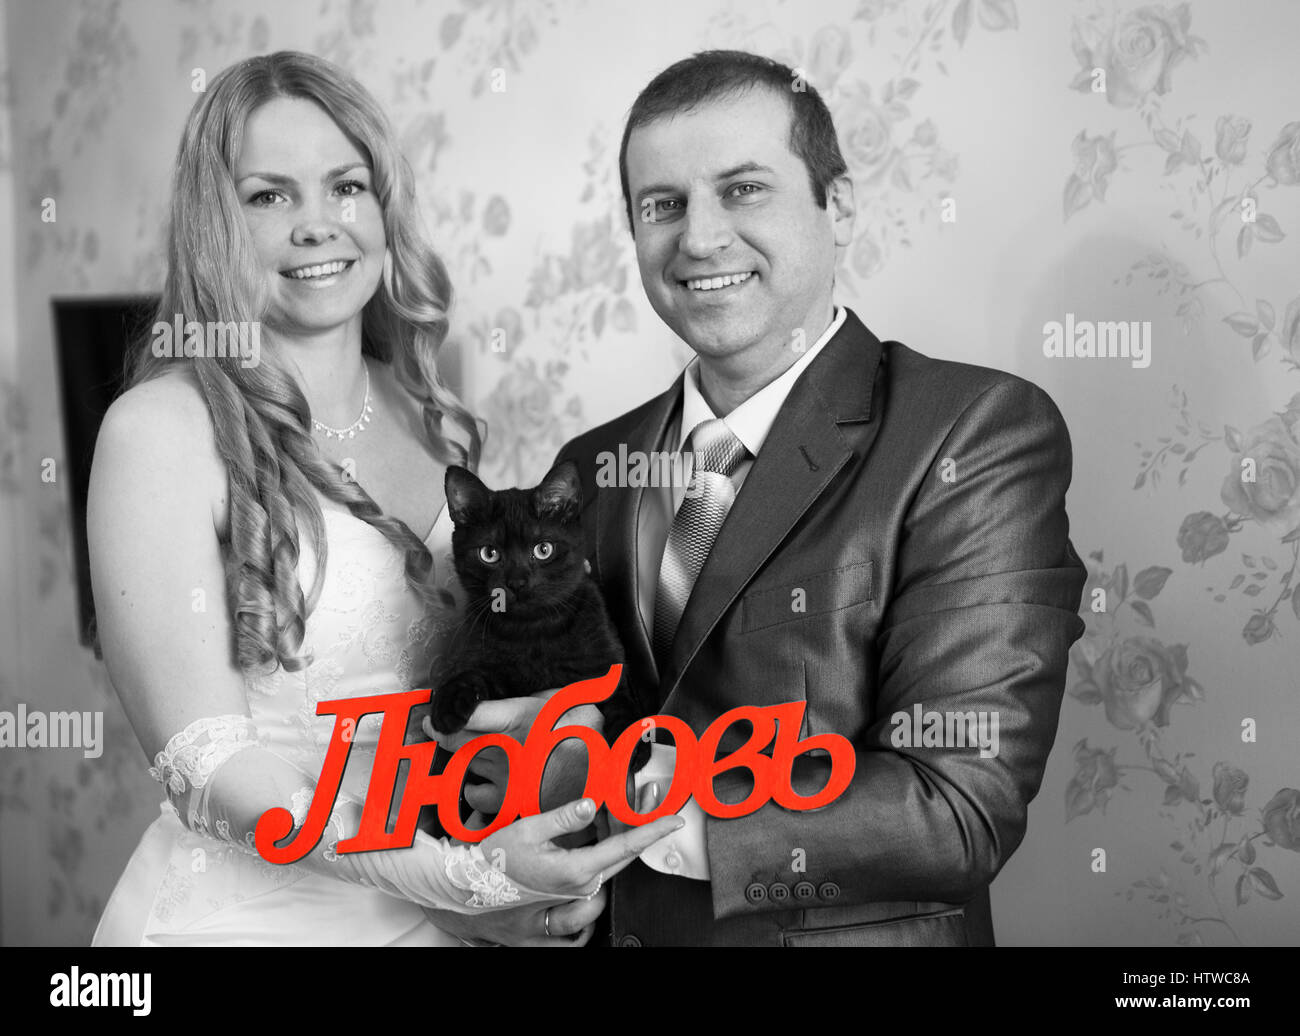 Gioioso matrimonio caucasico giovane azienda red parola amore in russo in mani e gatto nero, immagine in scala di grigi Foto Stock